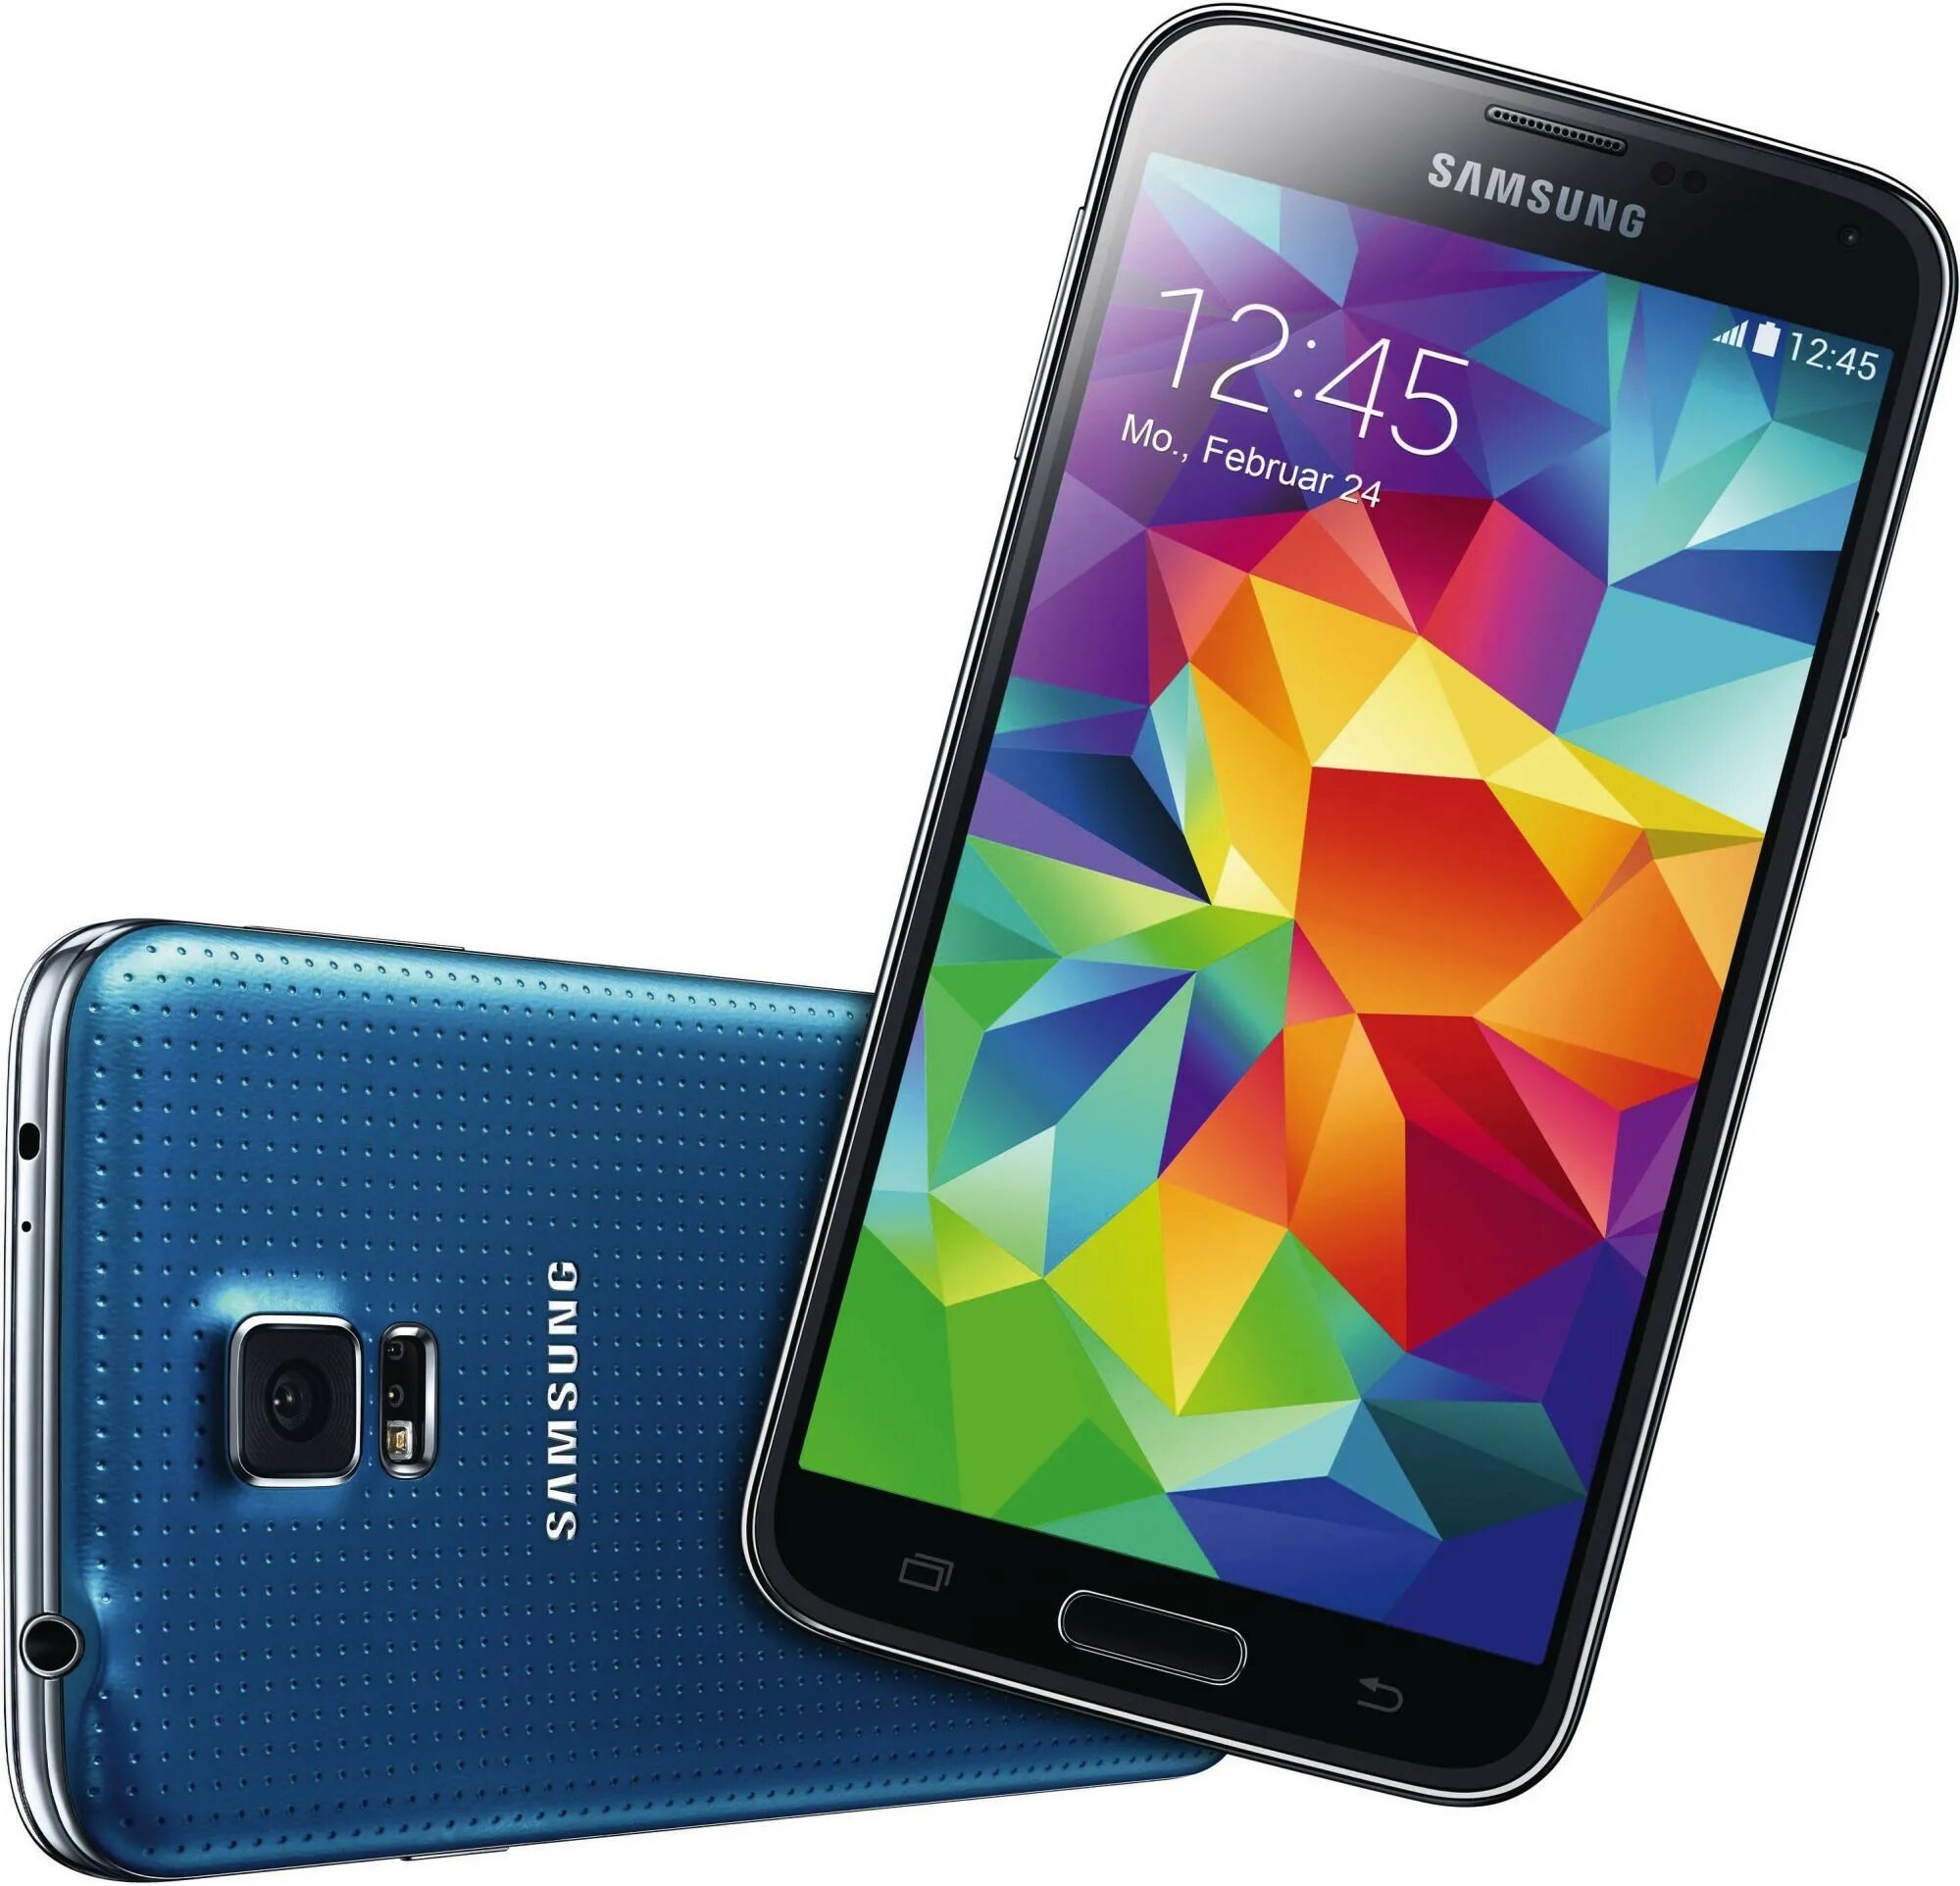 Samsung Galaxy s5 g900f. Galaxy s5 SM-g900f. Samsung Galaxy s5 Duos SM-g900fd. Samsung s5 narxi. Купить галакси s5